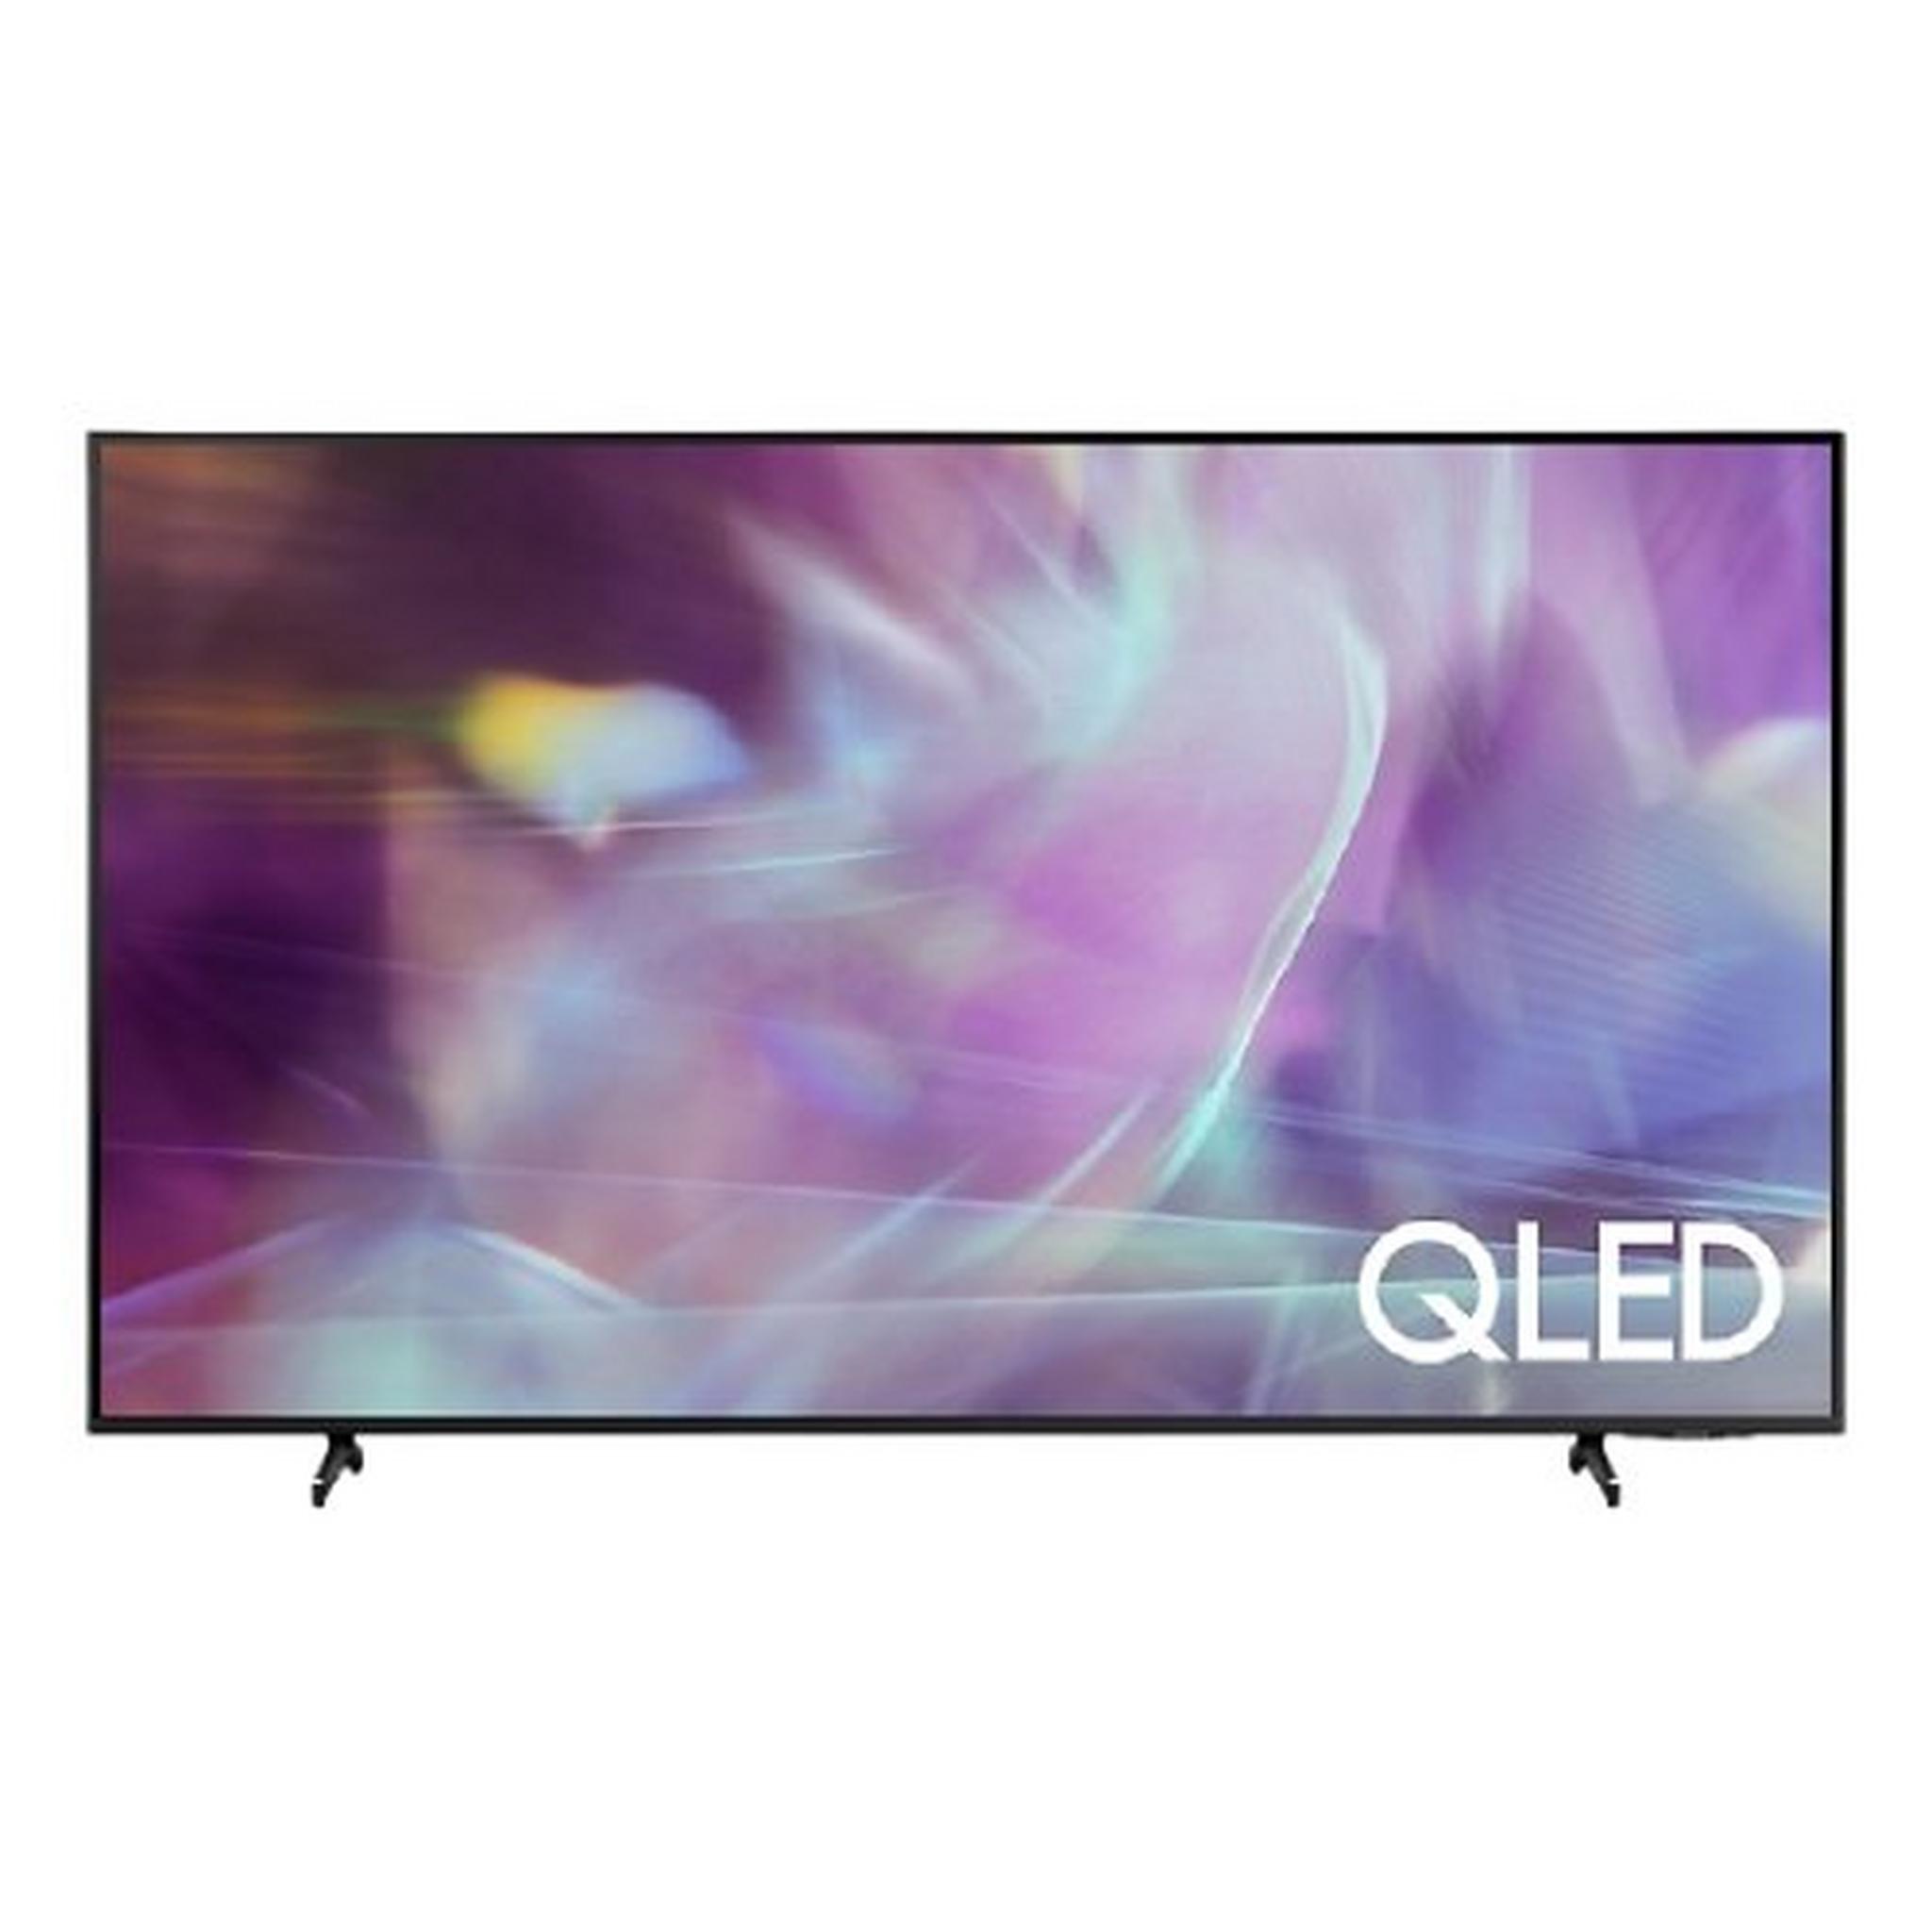 Samsung 75-inch Smart UHD QLED TV (QA75Q60AAU)